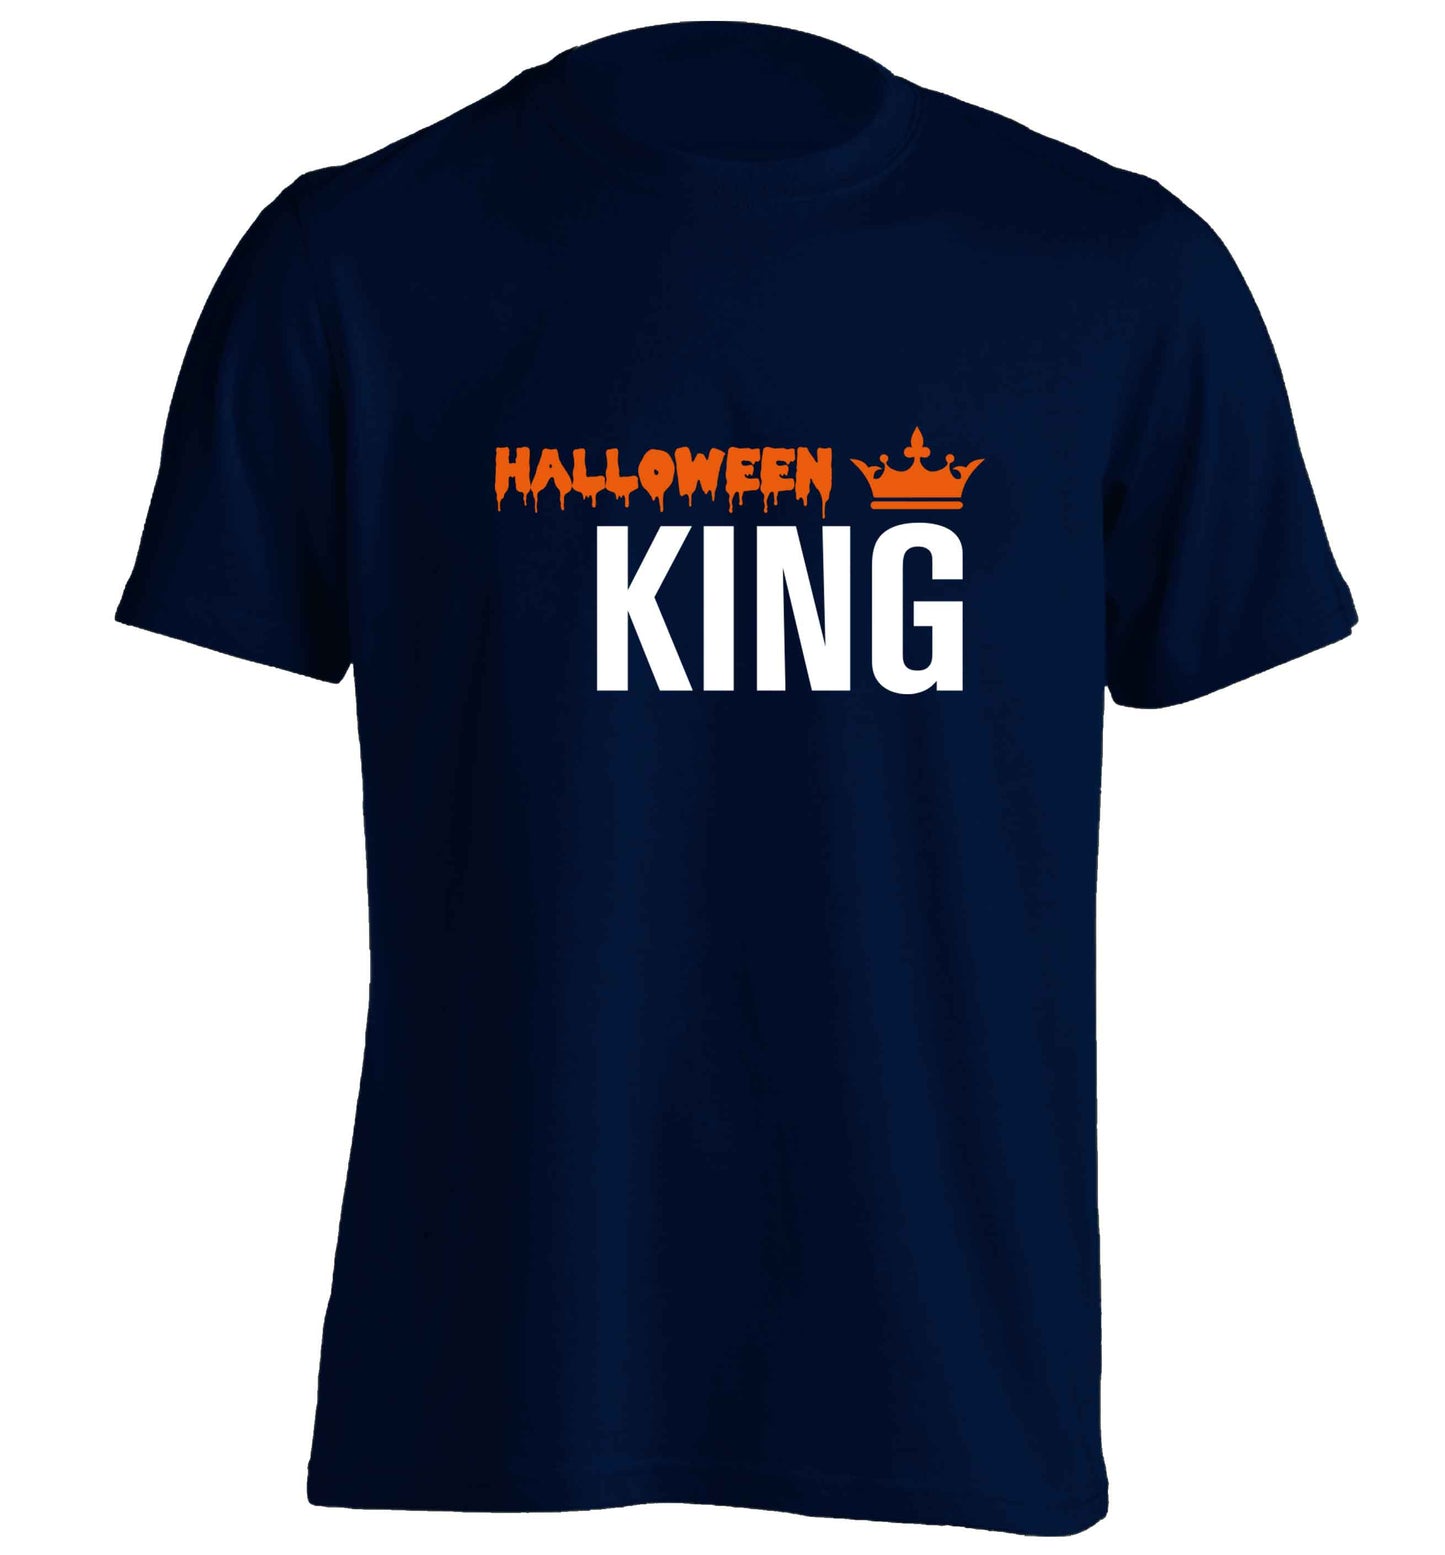 Halloween king adults unisex navy Tshirt 2XL